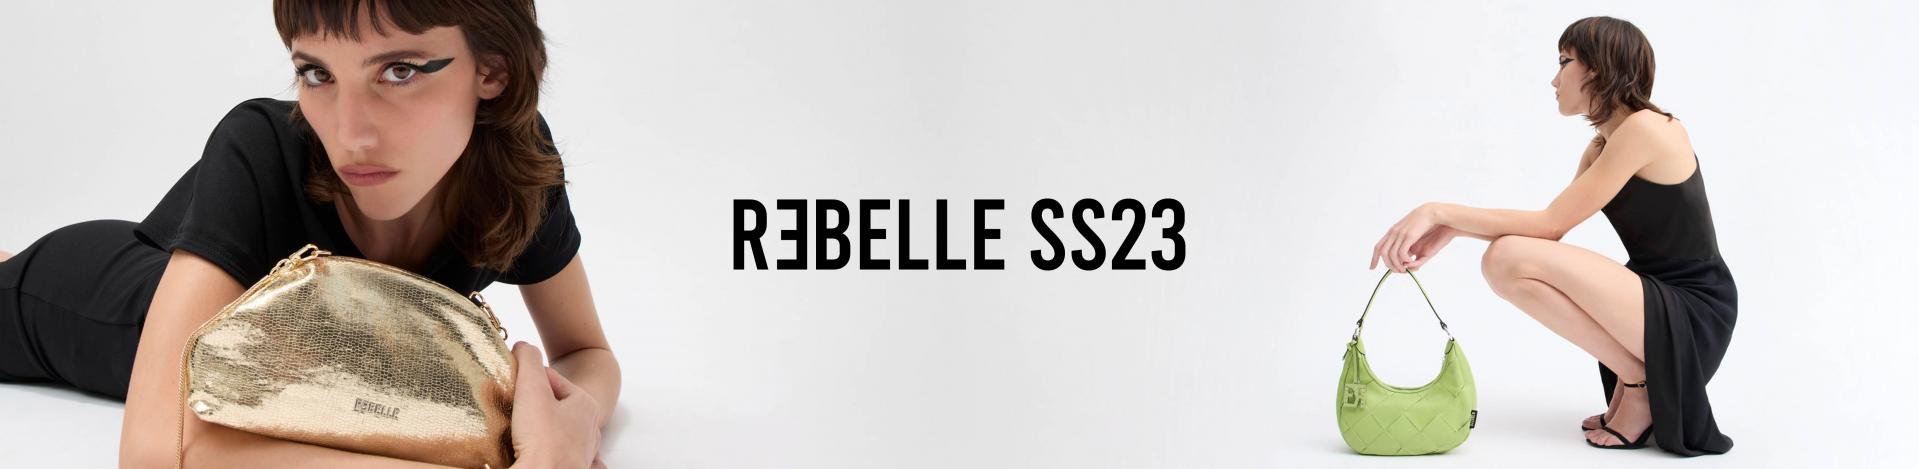 Collezione SS23 di Rebelle: Leggera, urban e giocosa